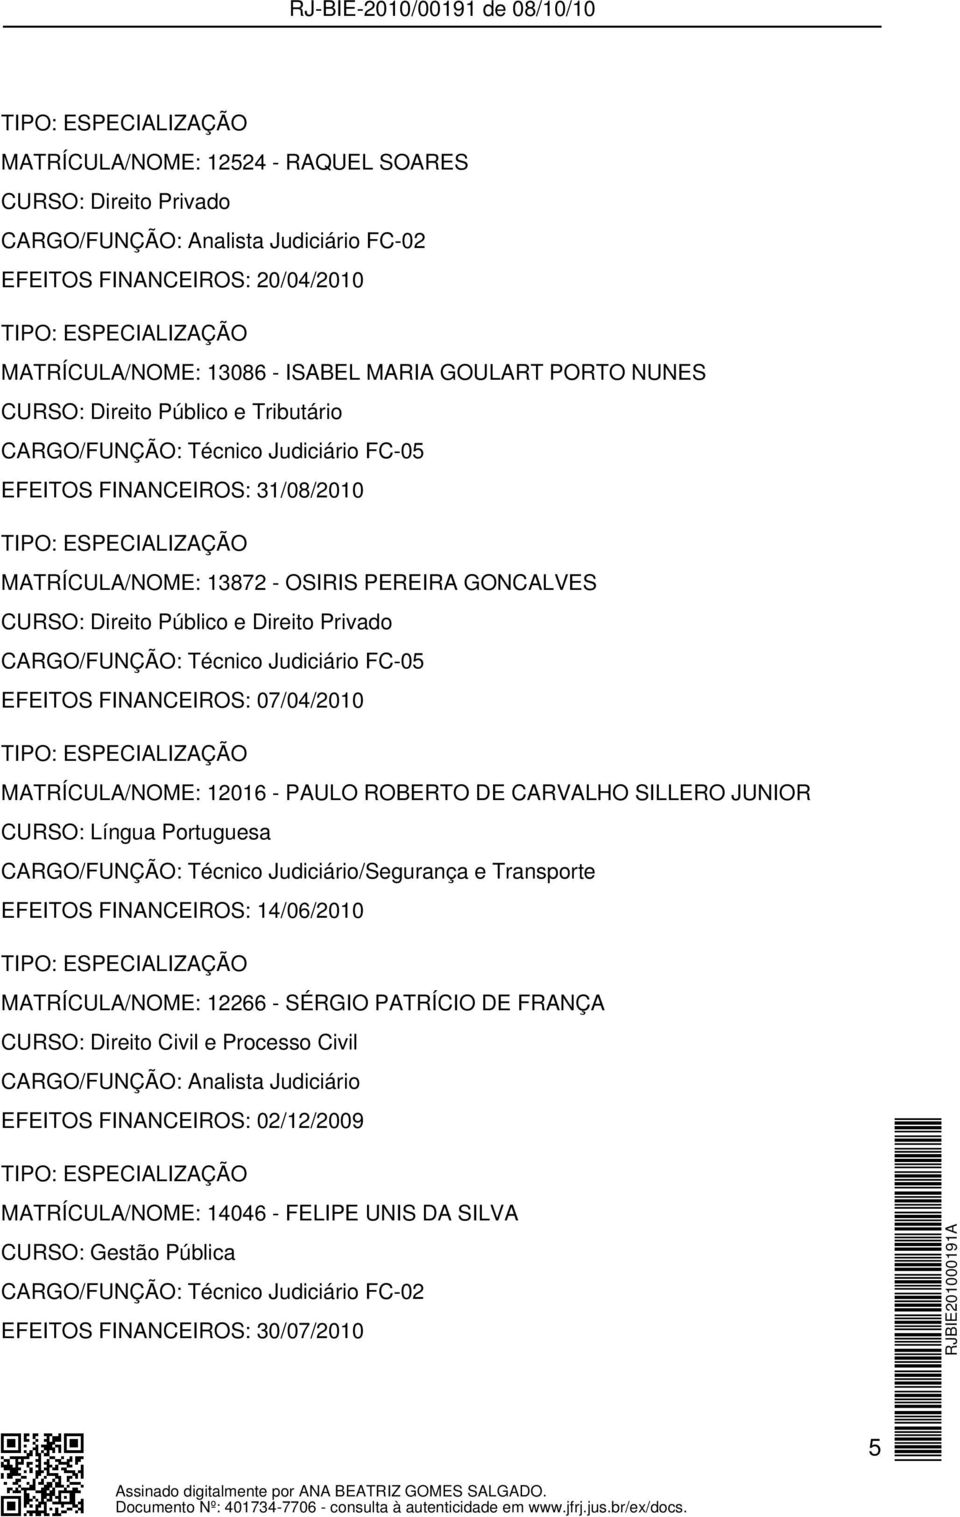 12016 - PAULO ROBERTO DE CARVALHO SILLERO JUNIOR CURSO: Língua Portuguesa CARGO/FUNÇÃO: Técnico Judiciário/Segurança e Transporte EFEITOS FINANCEIROS: 14/06/2010 MATRÍCULA/NOME: 12266 - SÉRGIO